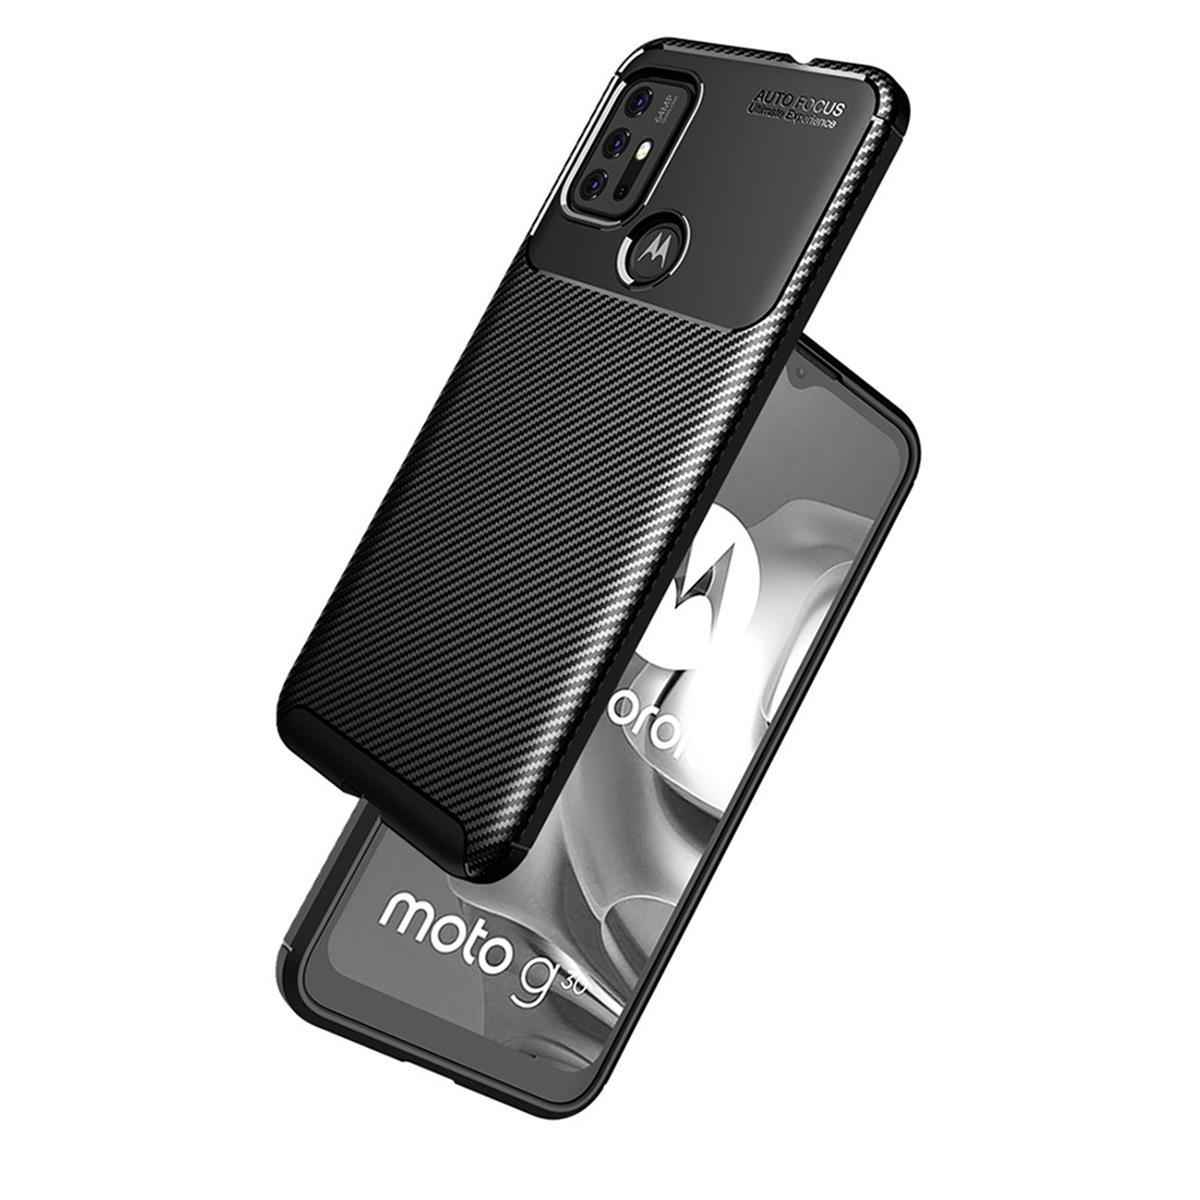 COVERKINGZ Handycase G30, Moto im Motorola, Look, Backcover, schwarz Carbon